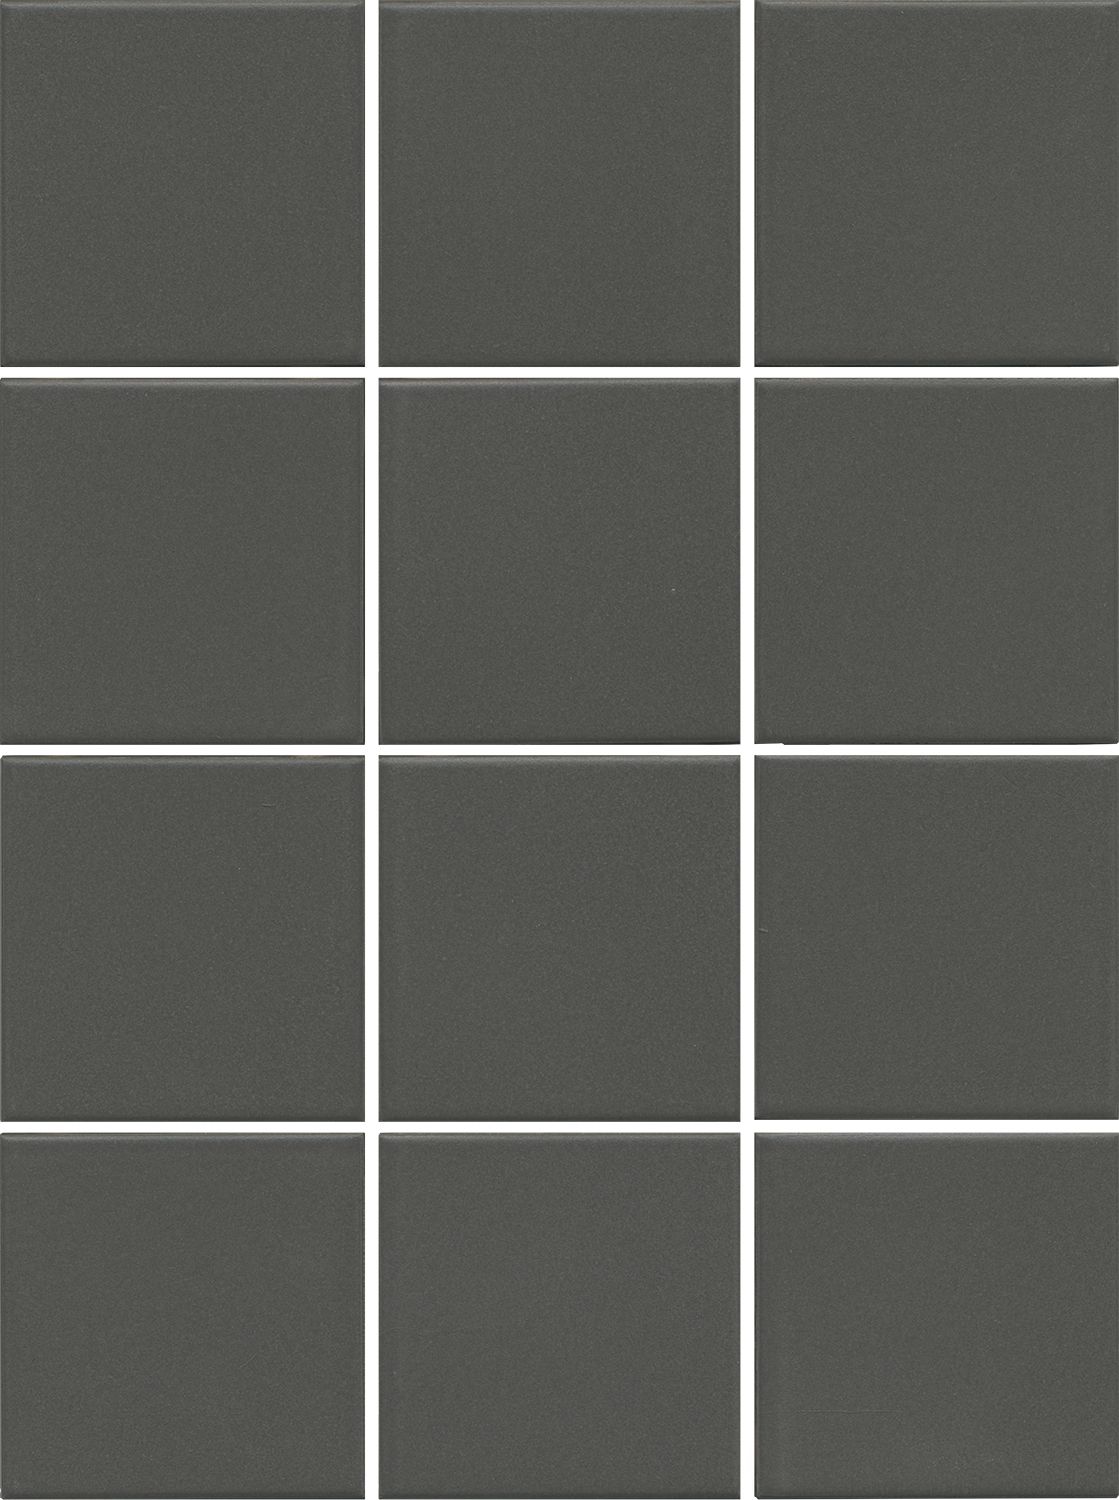 1331 Агуста серый темный натуральный 9,8x9,8 из 12 частей Kerama Marazzi